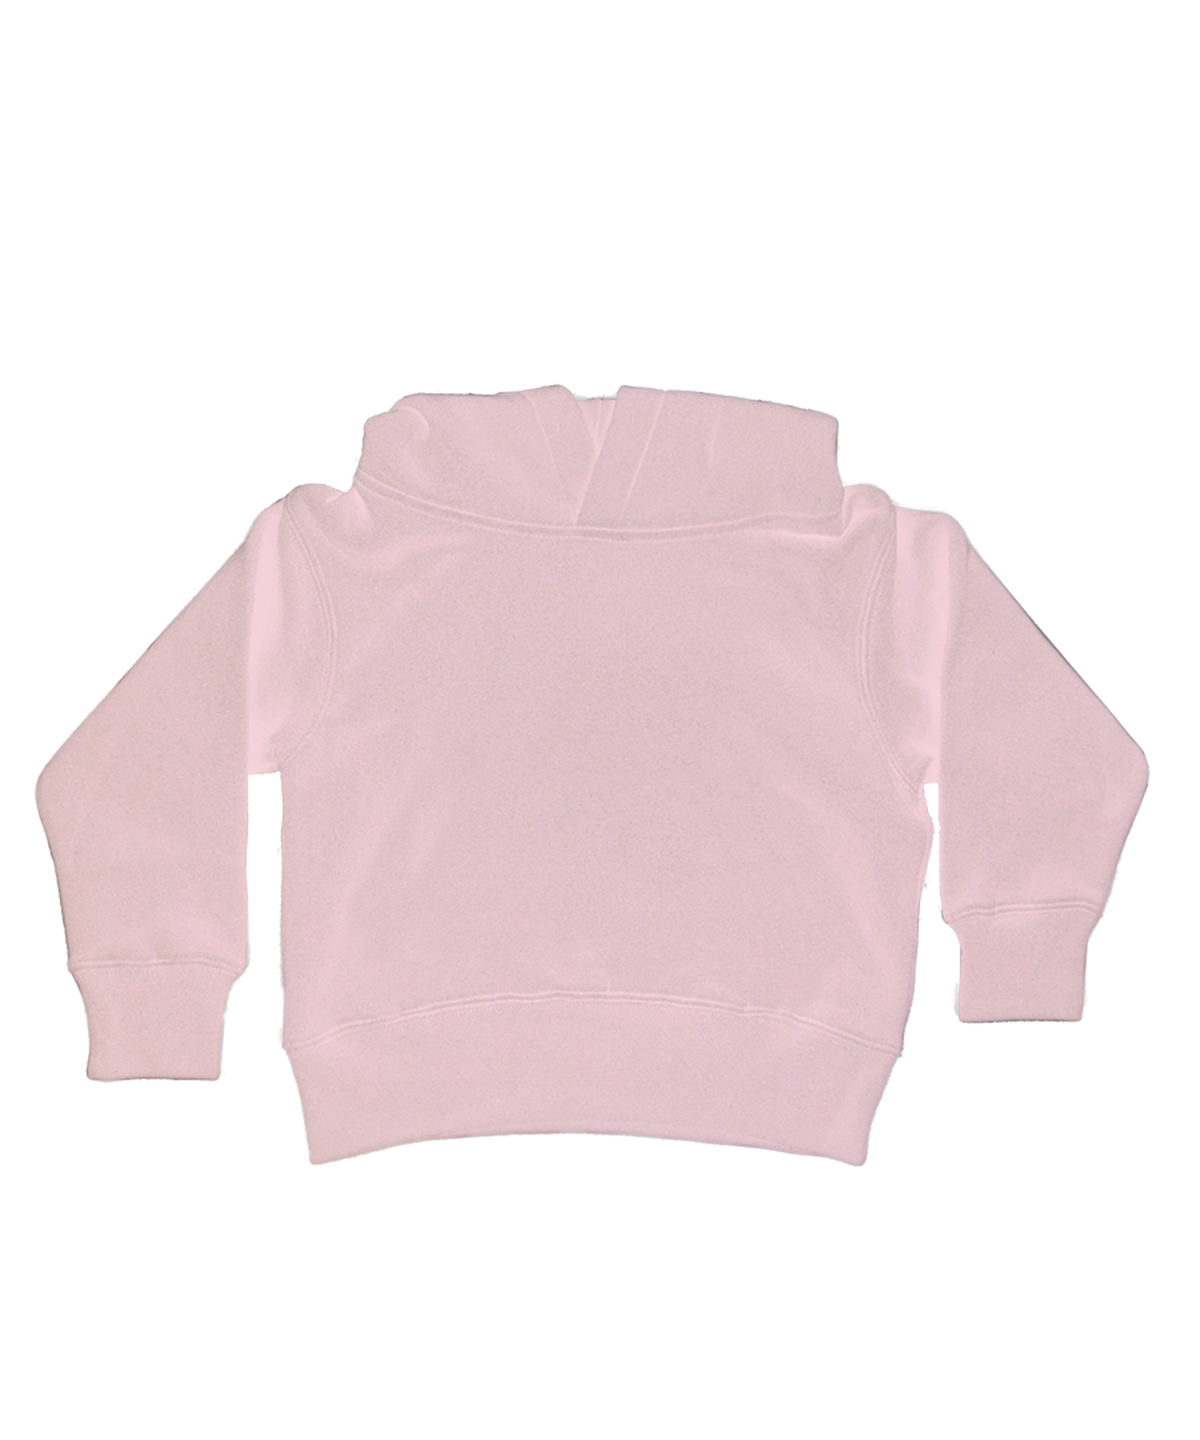 Personalised Hoodies - Heather Grey Babybugz Baby essential hoodie